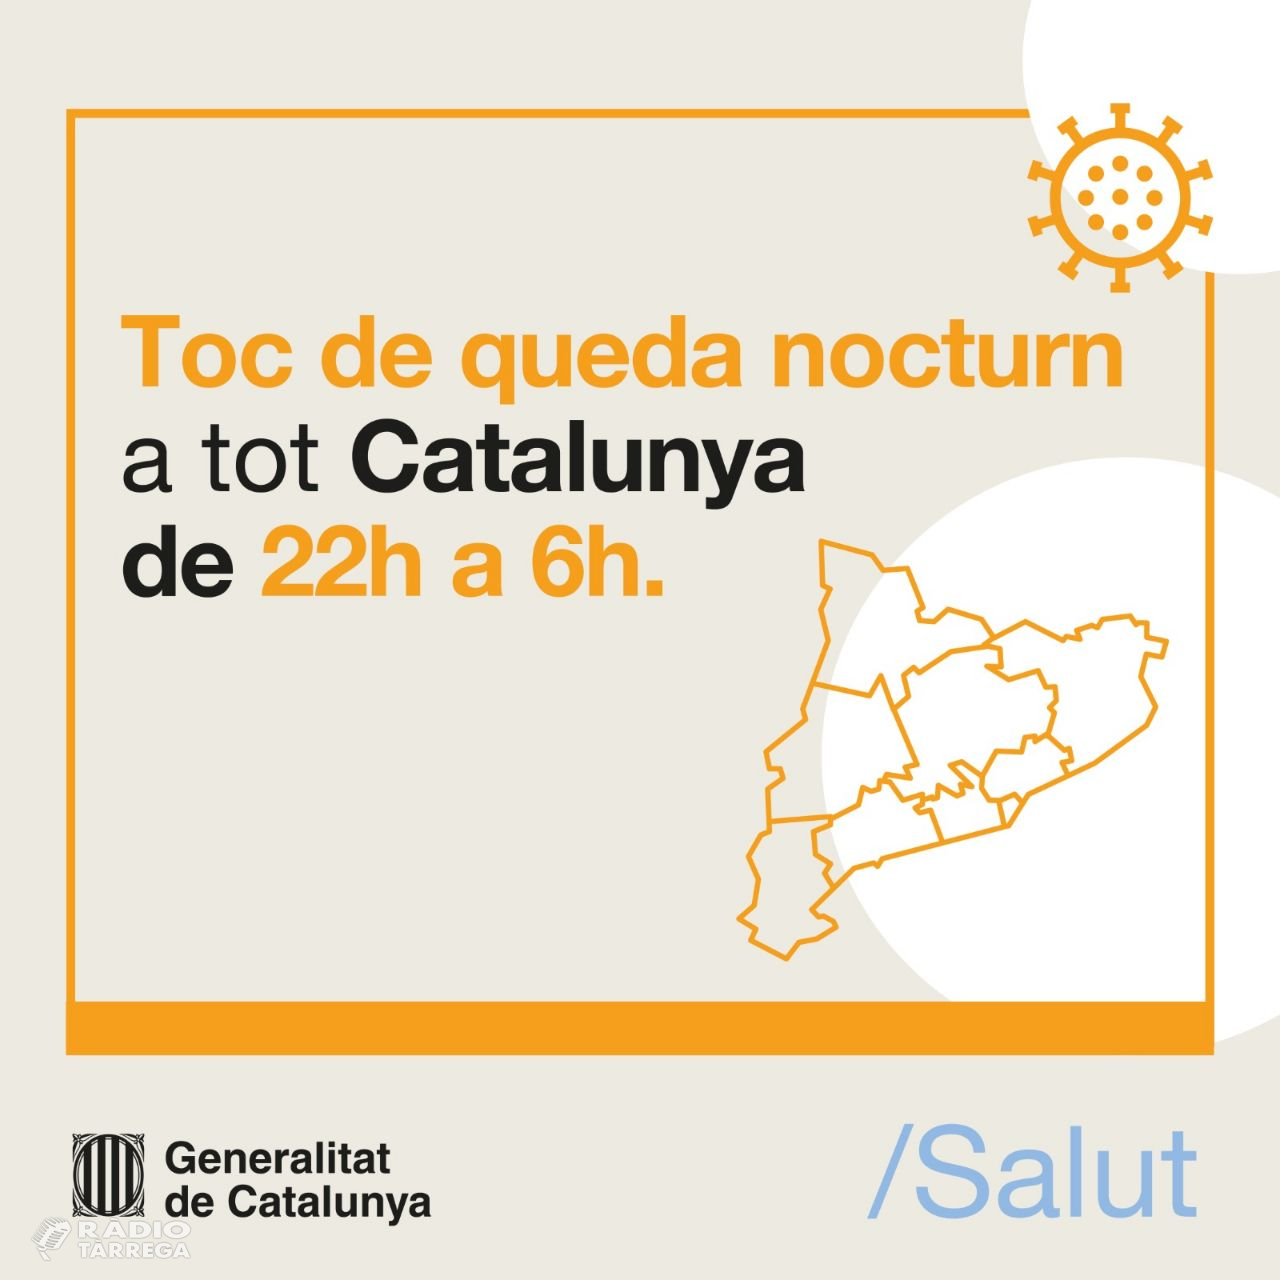 El toc de queda a Catalunya serà finalment entre les 22 i les 6 hores i els establiments hauran de tancar a les 21 h